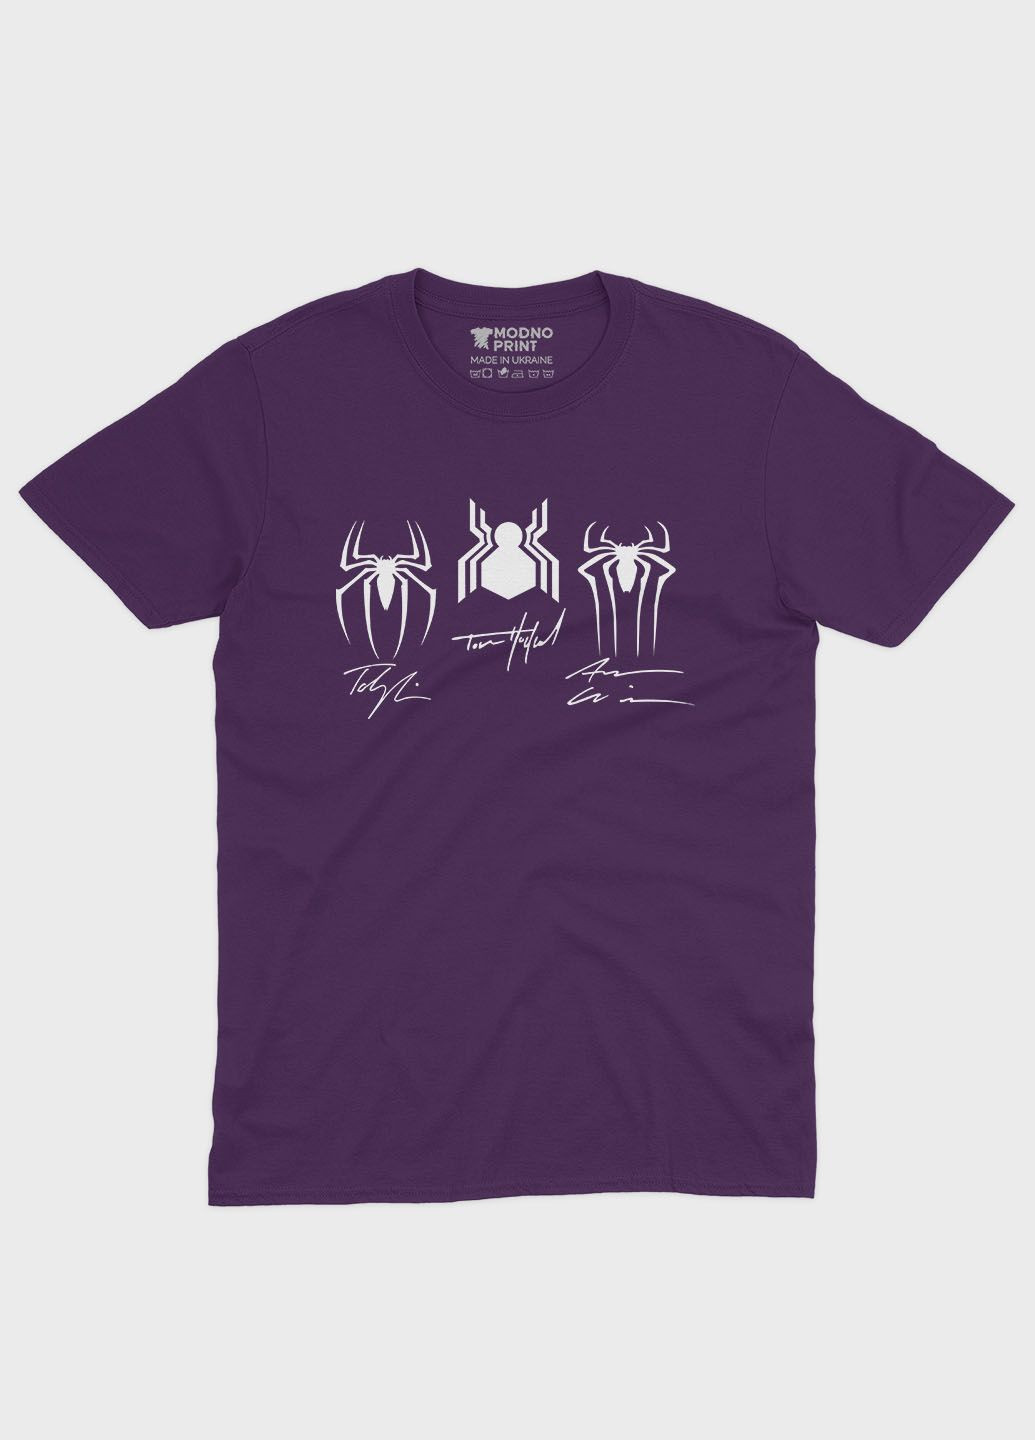 Фиолетовая демисезонная футболка для мальчика с принтом супергероя - человек-паук (ts001-1-dby-006-014-098-b) Modno